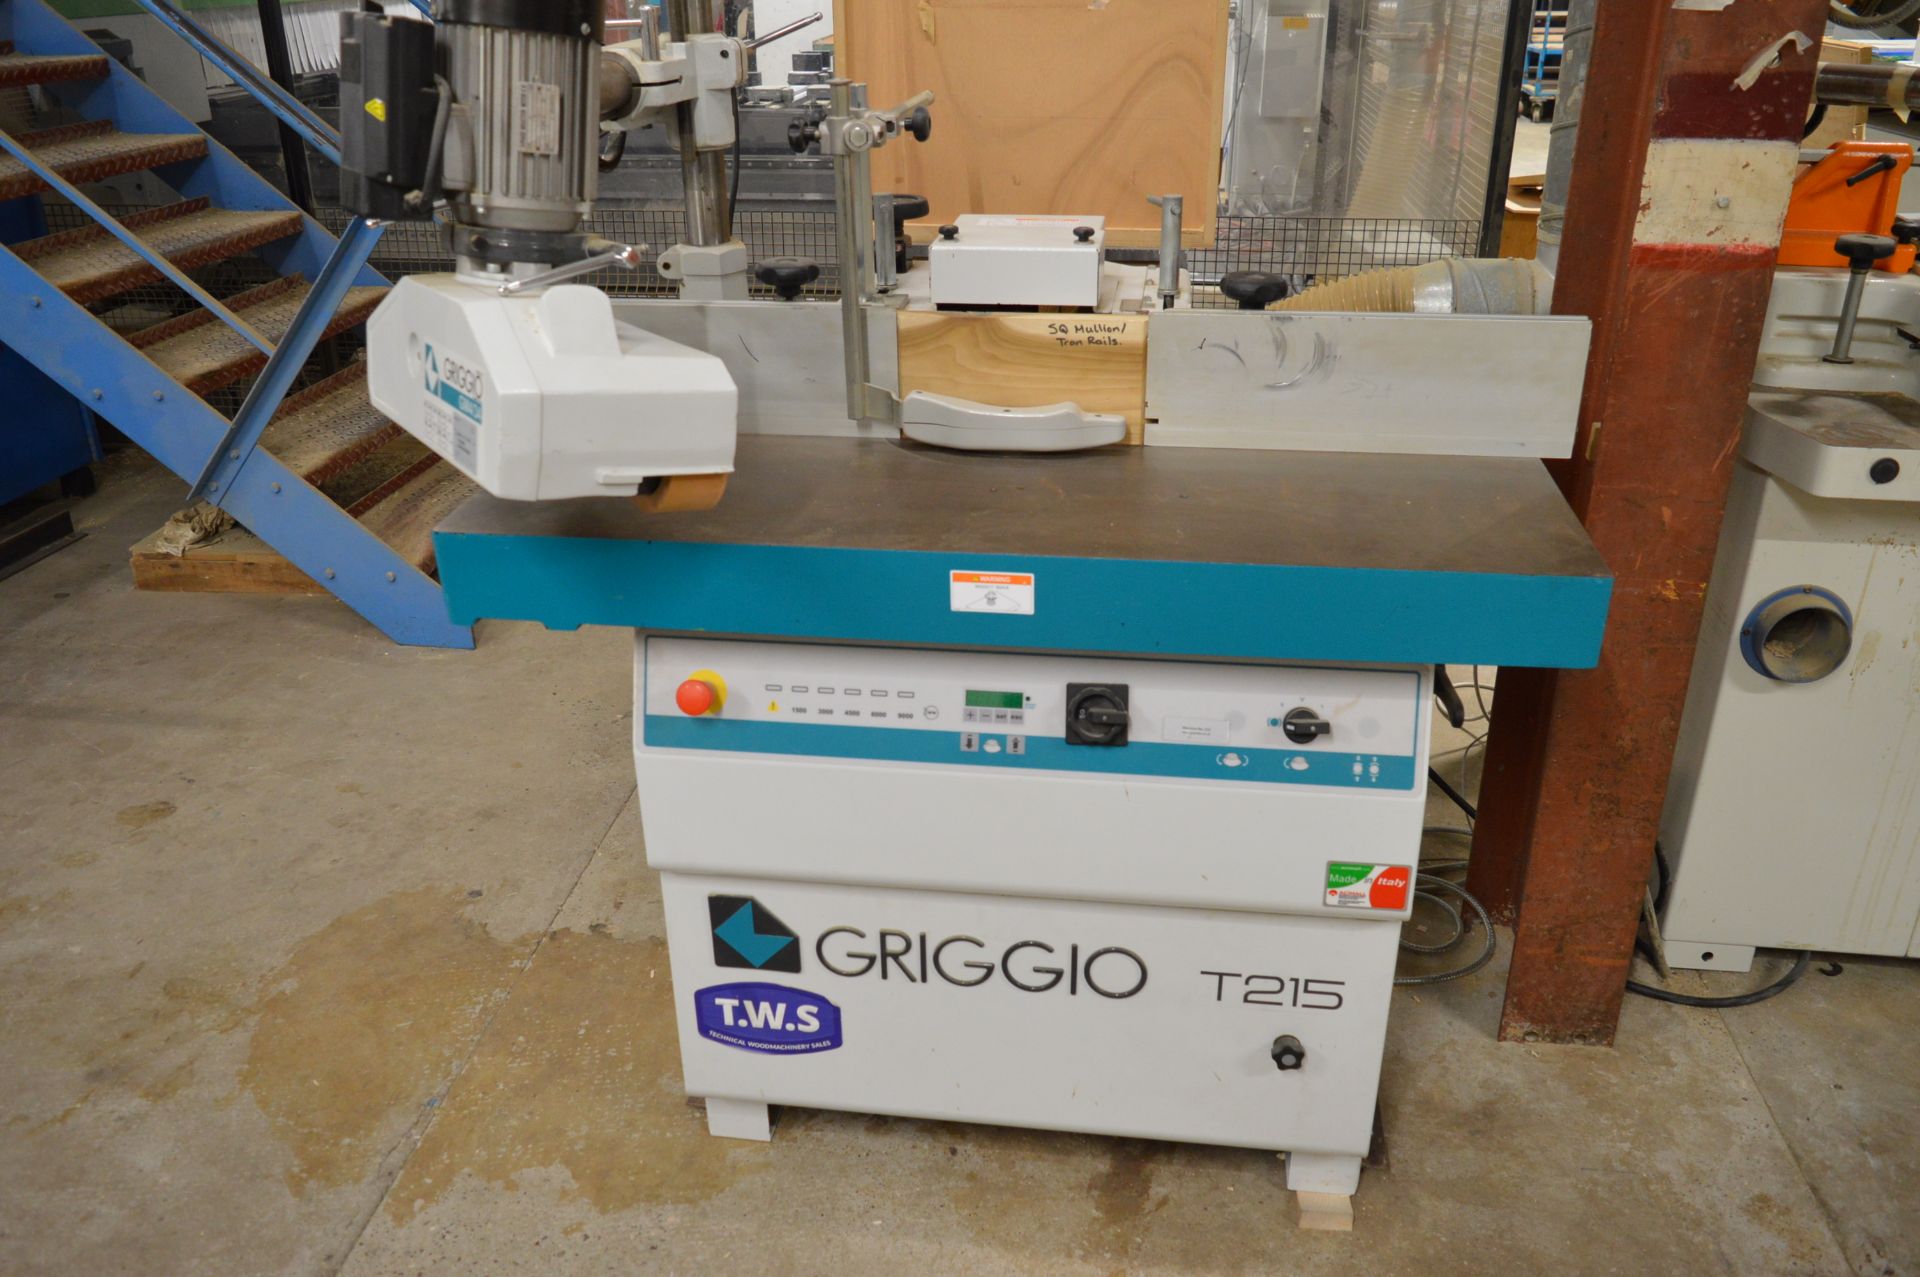 Griggio T215 spindle moulder, Serial No. 14P810695460000 (2014), with Griggio GM4/34 3-roller